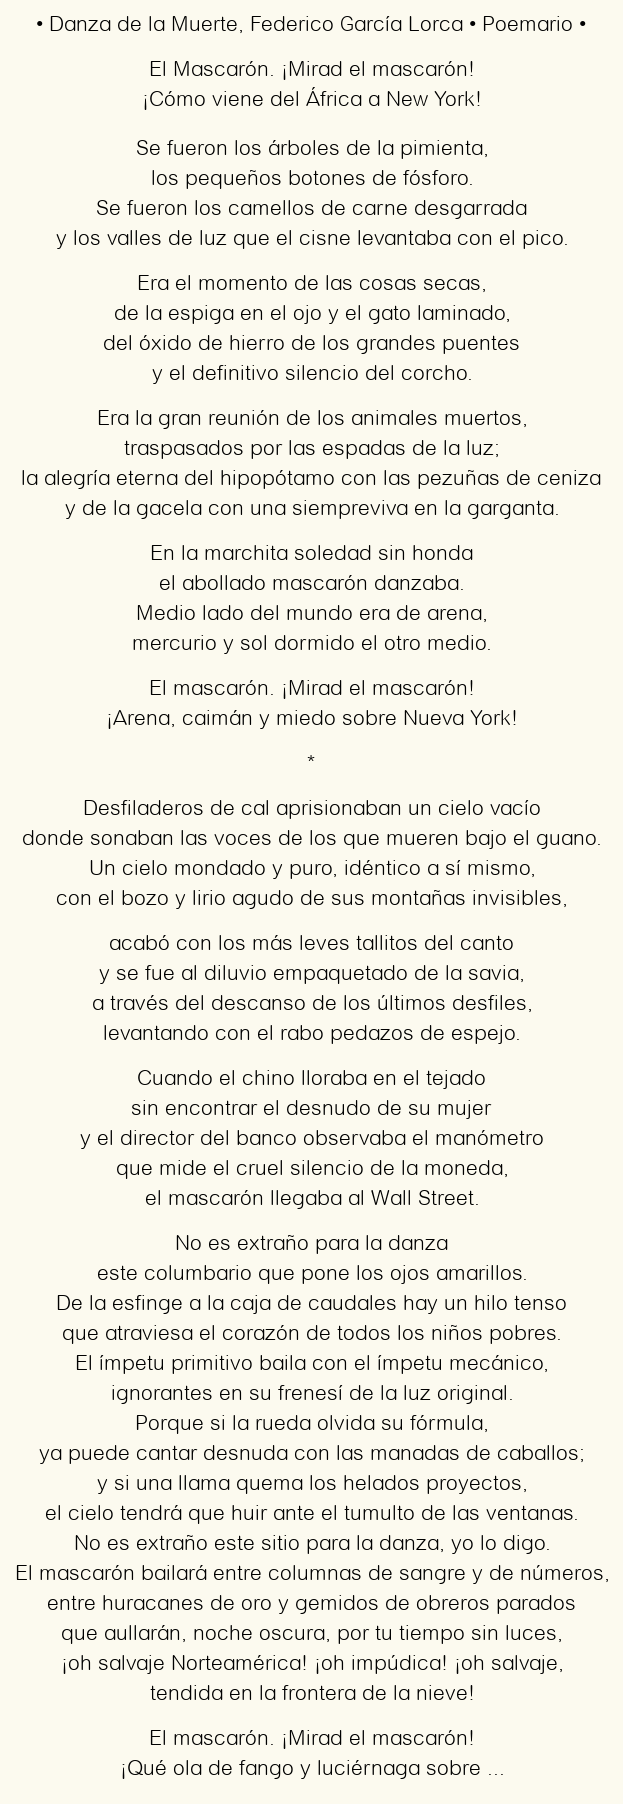 Imagen con el poema Danza de la Muerte, por Federico García Lorca